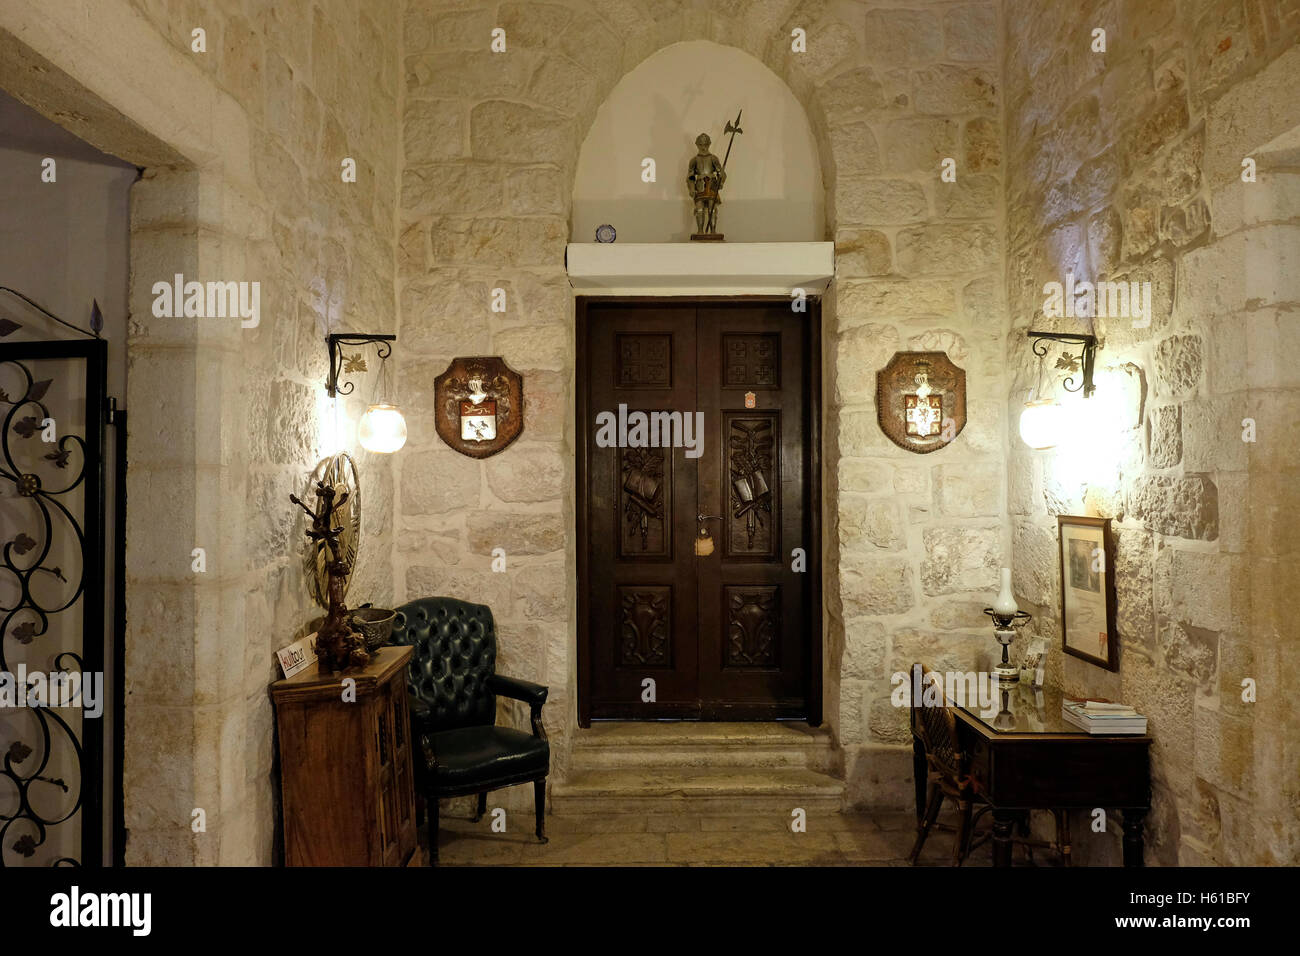 Intérieur de l'établissement Knights Palace hotel un ancien séminaire de théologie situé dans le quartier chrétien de la vieille ville de Jérusalem Israël Banque D'Images